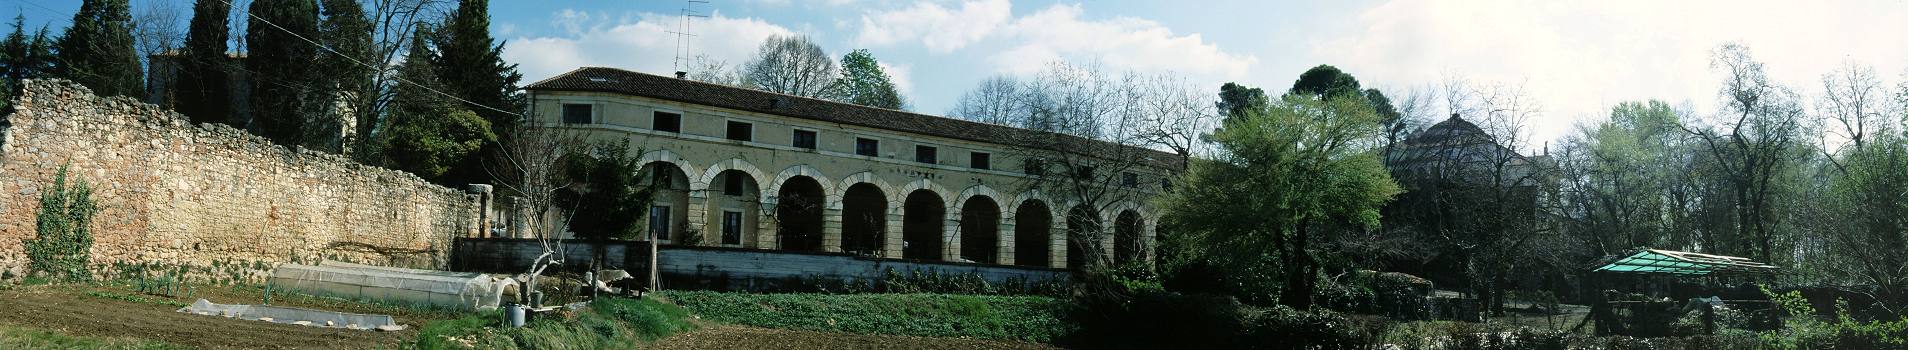 Vicenza, villa Almerico Capra, La Rotonda